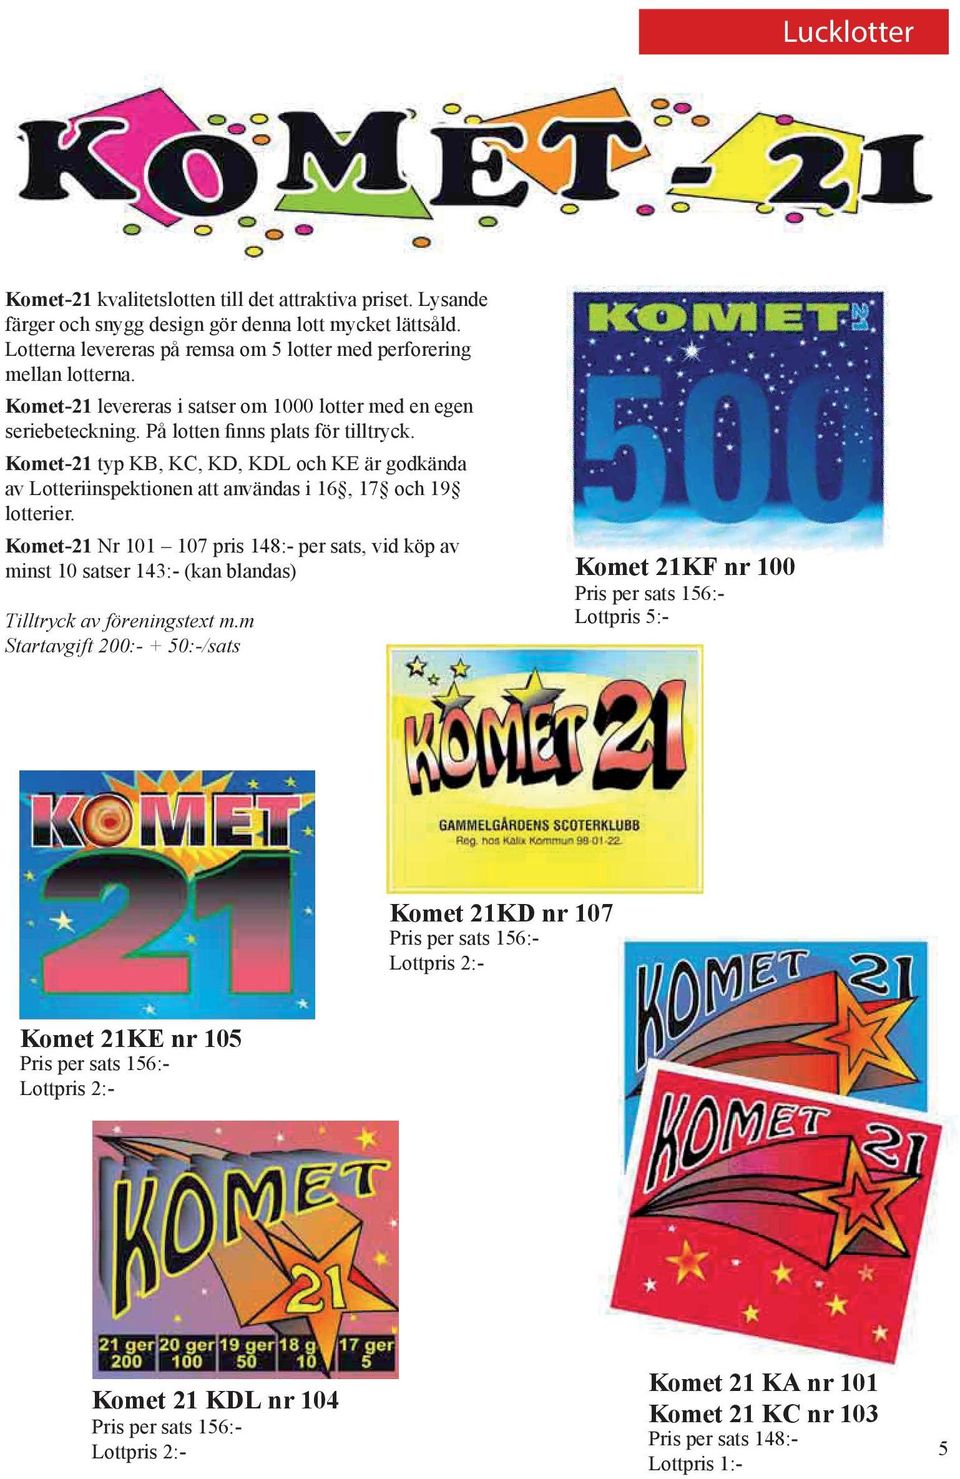 Komet-21 typ KB, KC, KD, KDL och KE är godkända av Lotteriinspektionen att användas i 16, 17 och 19 lotterier.